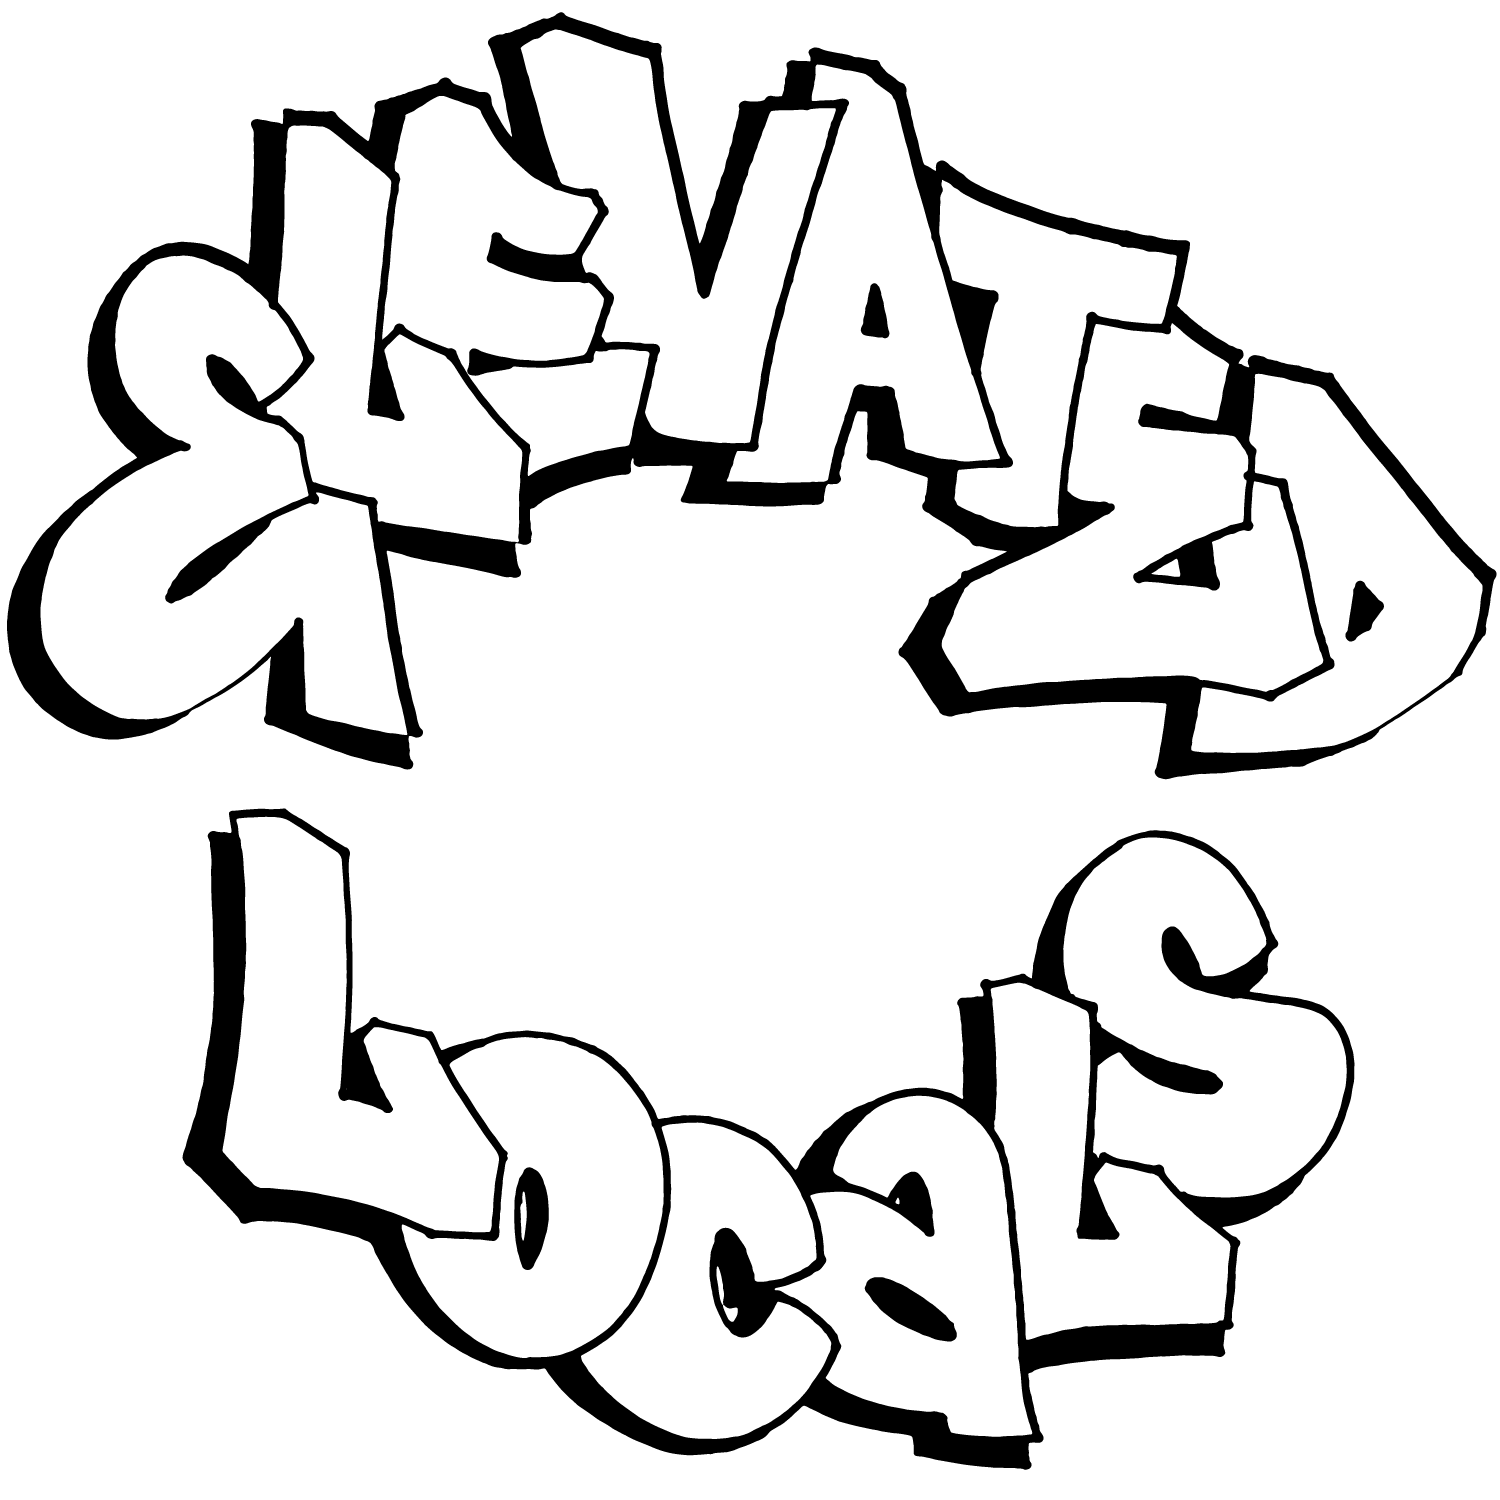 Elevated Locals